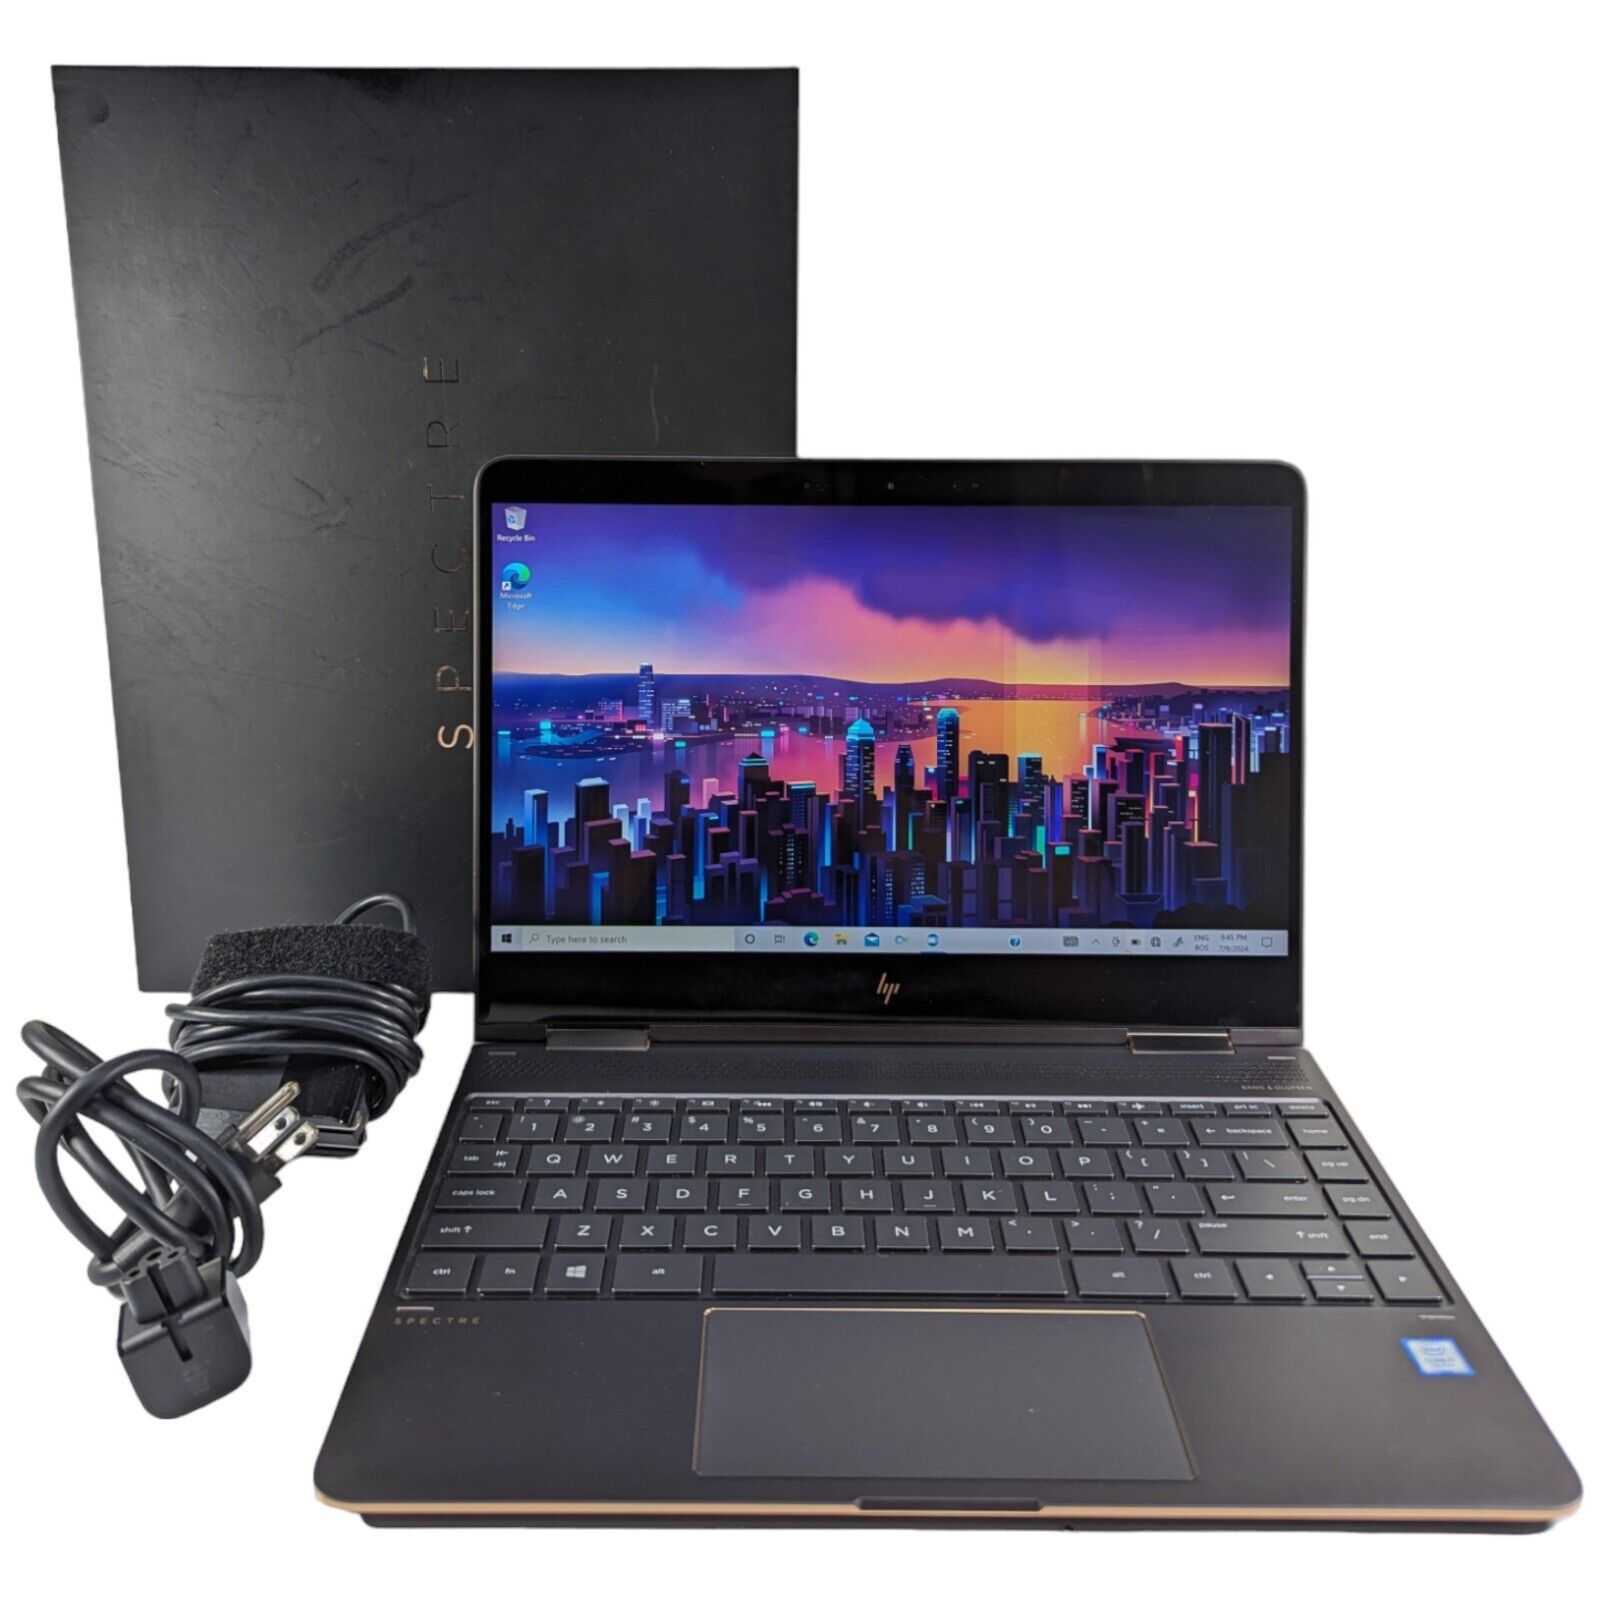 HP Spectre x360 2-in-1 13-ac033dx Touch Laptop i7-7500 16GB RAM 500GB SSD + PEN